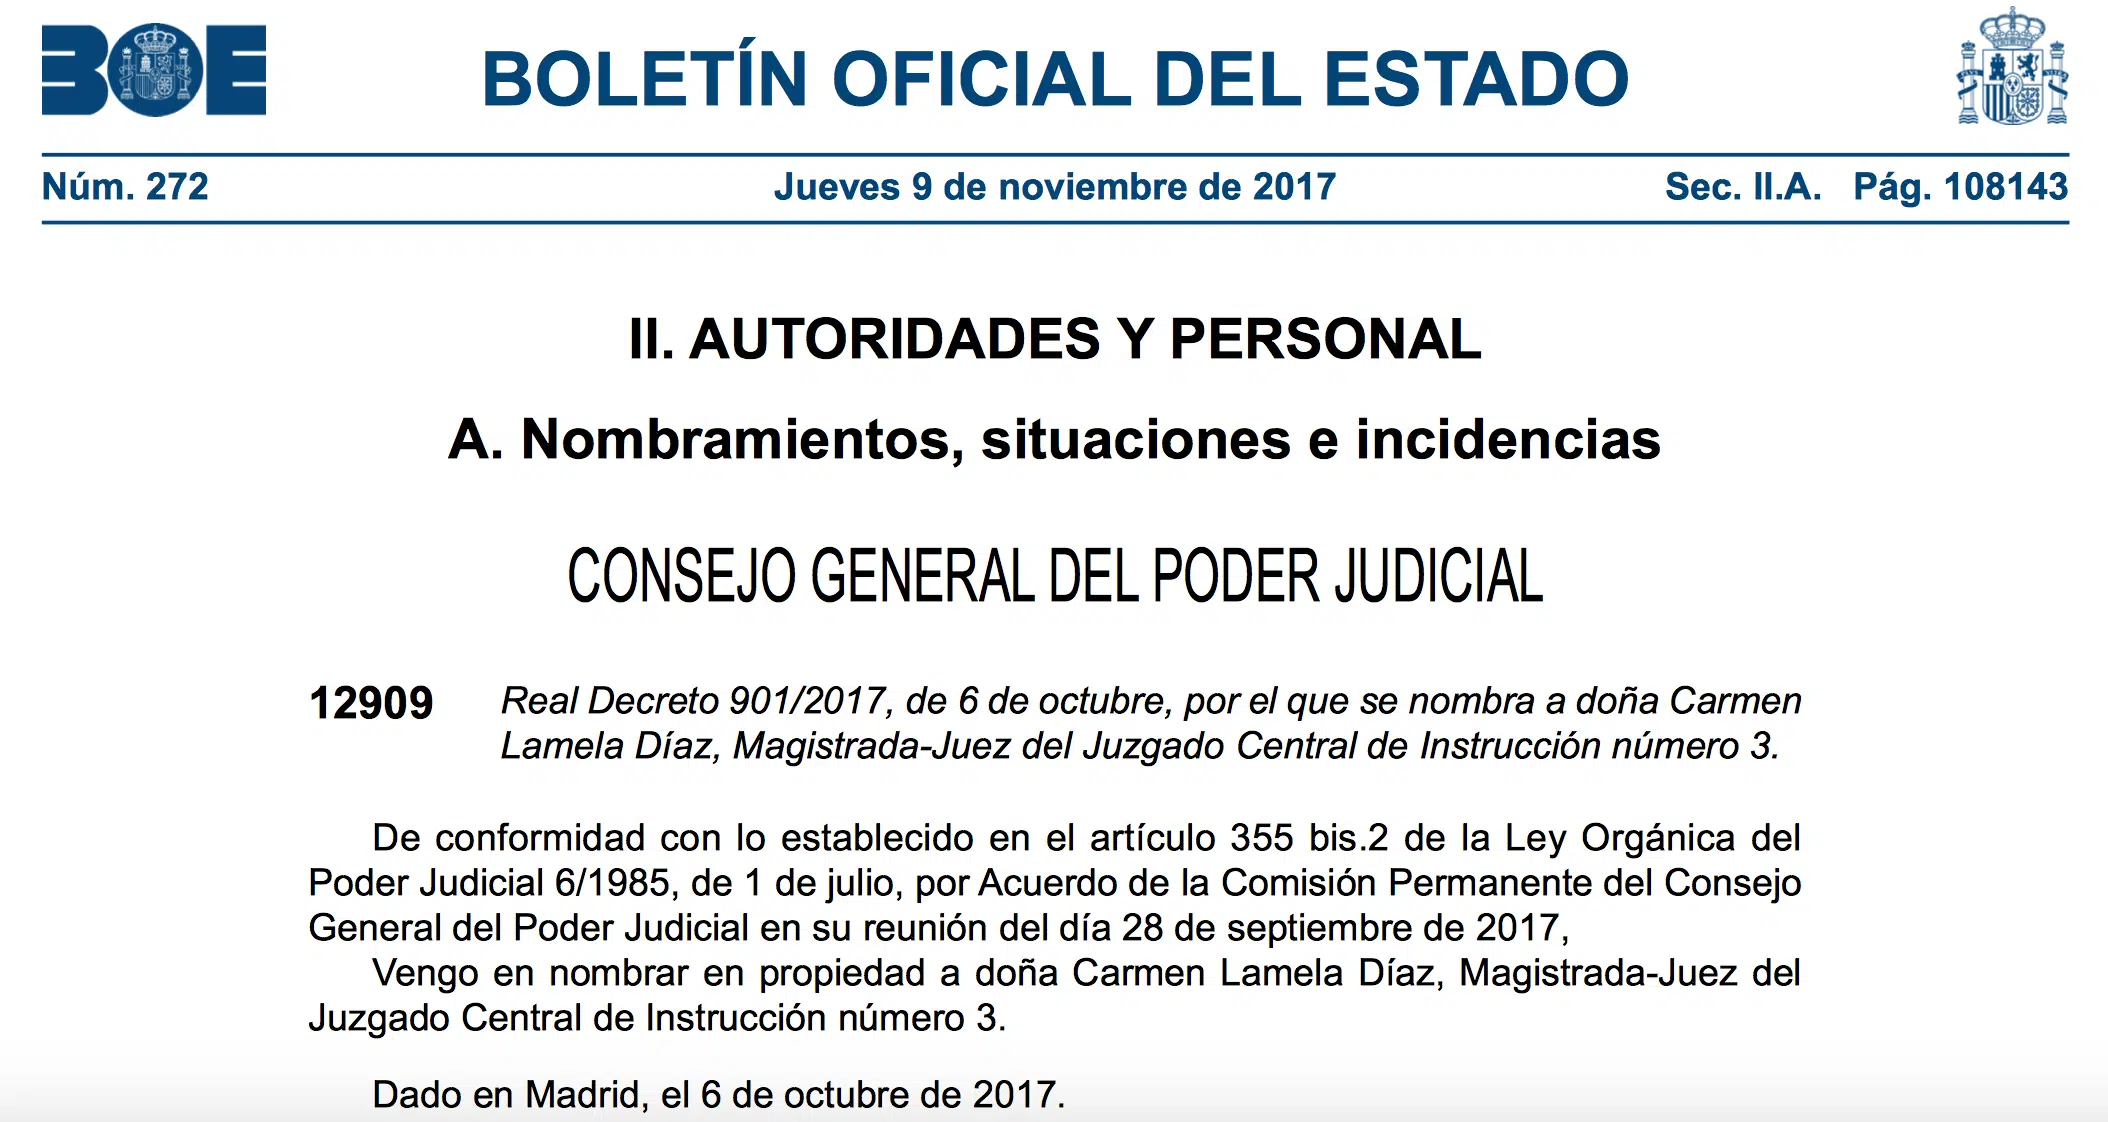 La plaza de la juez Lamela en la Audiencia Nacional ya es definitiva, tras su publicación en el BOE